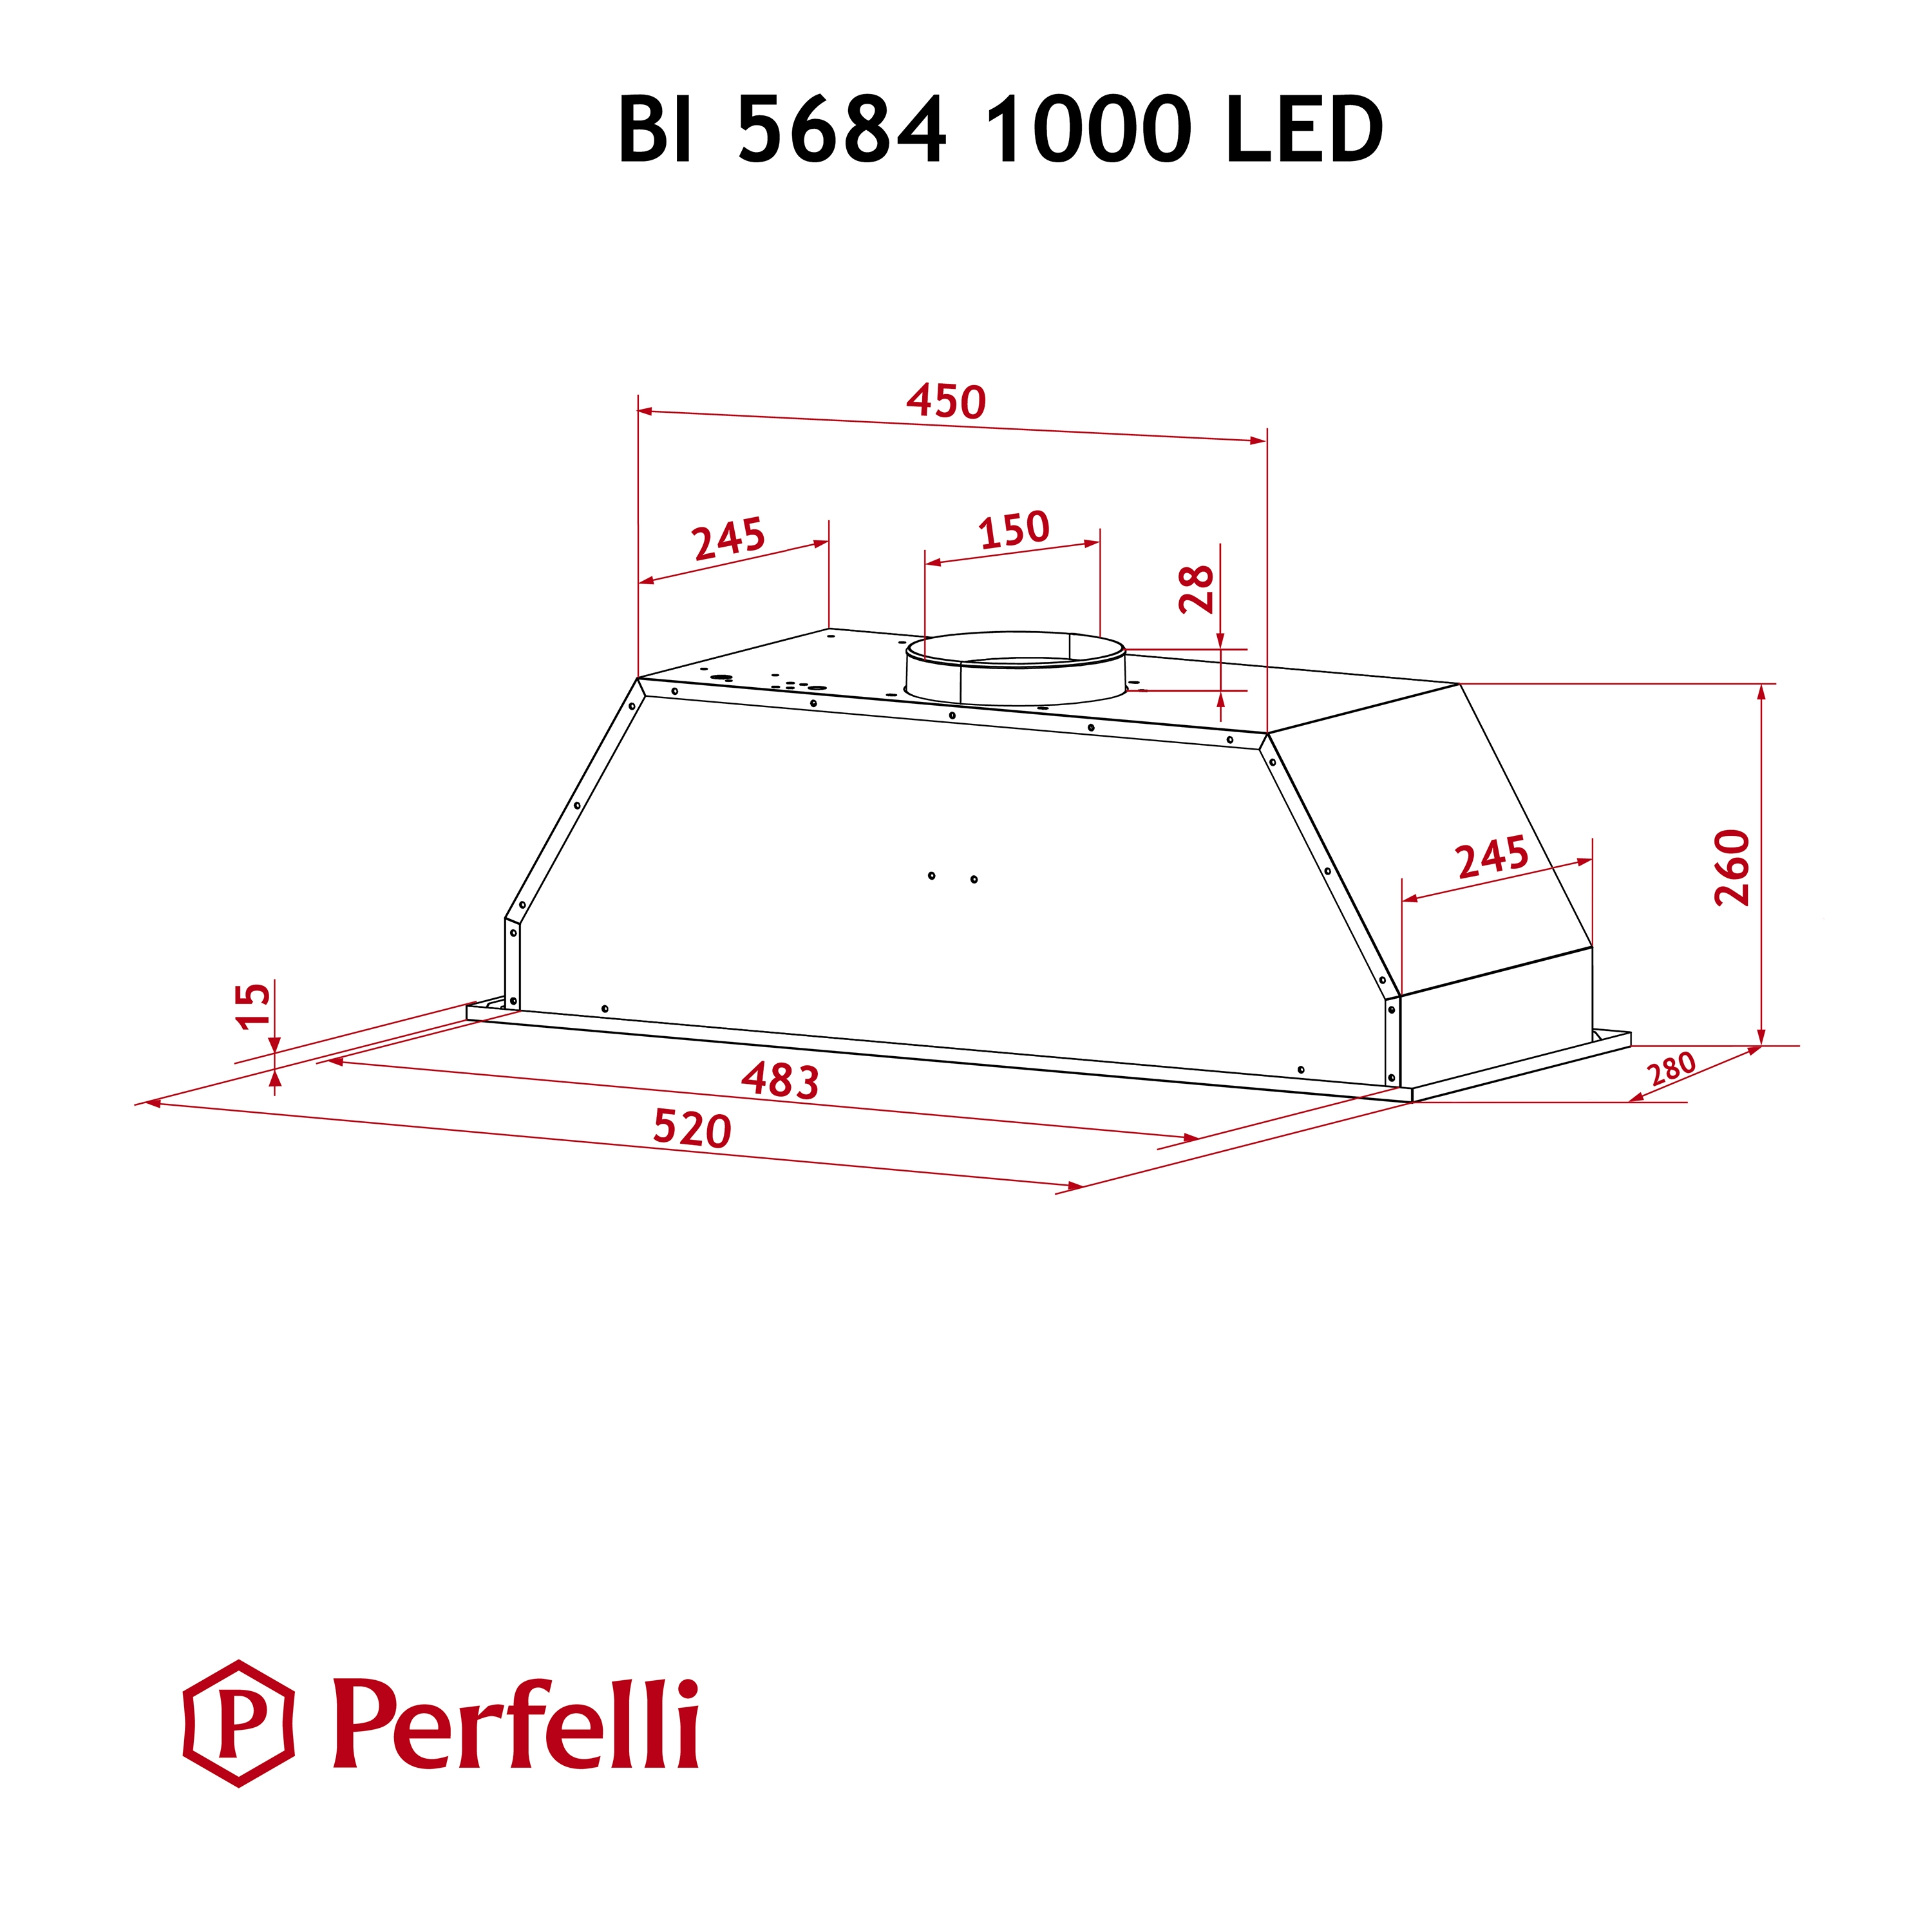 Perfelli BI 5684 BL 1000 LED Габаритные размеры